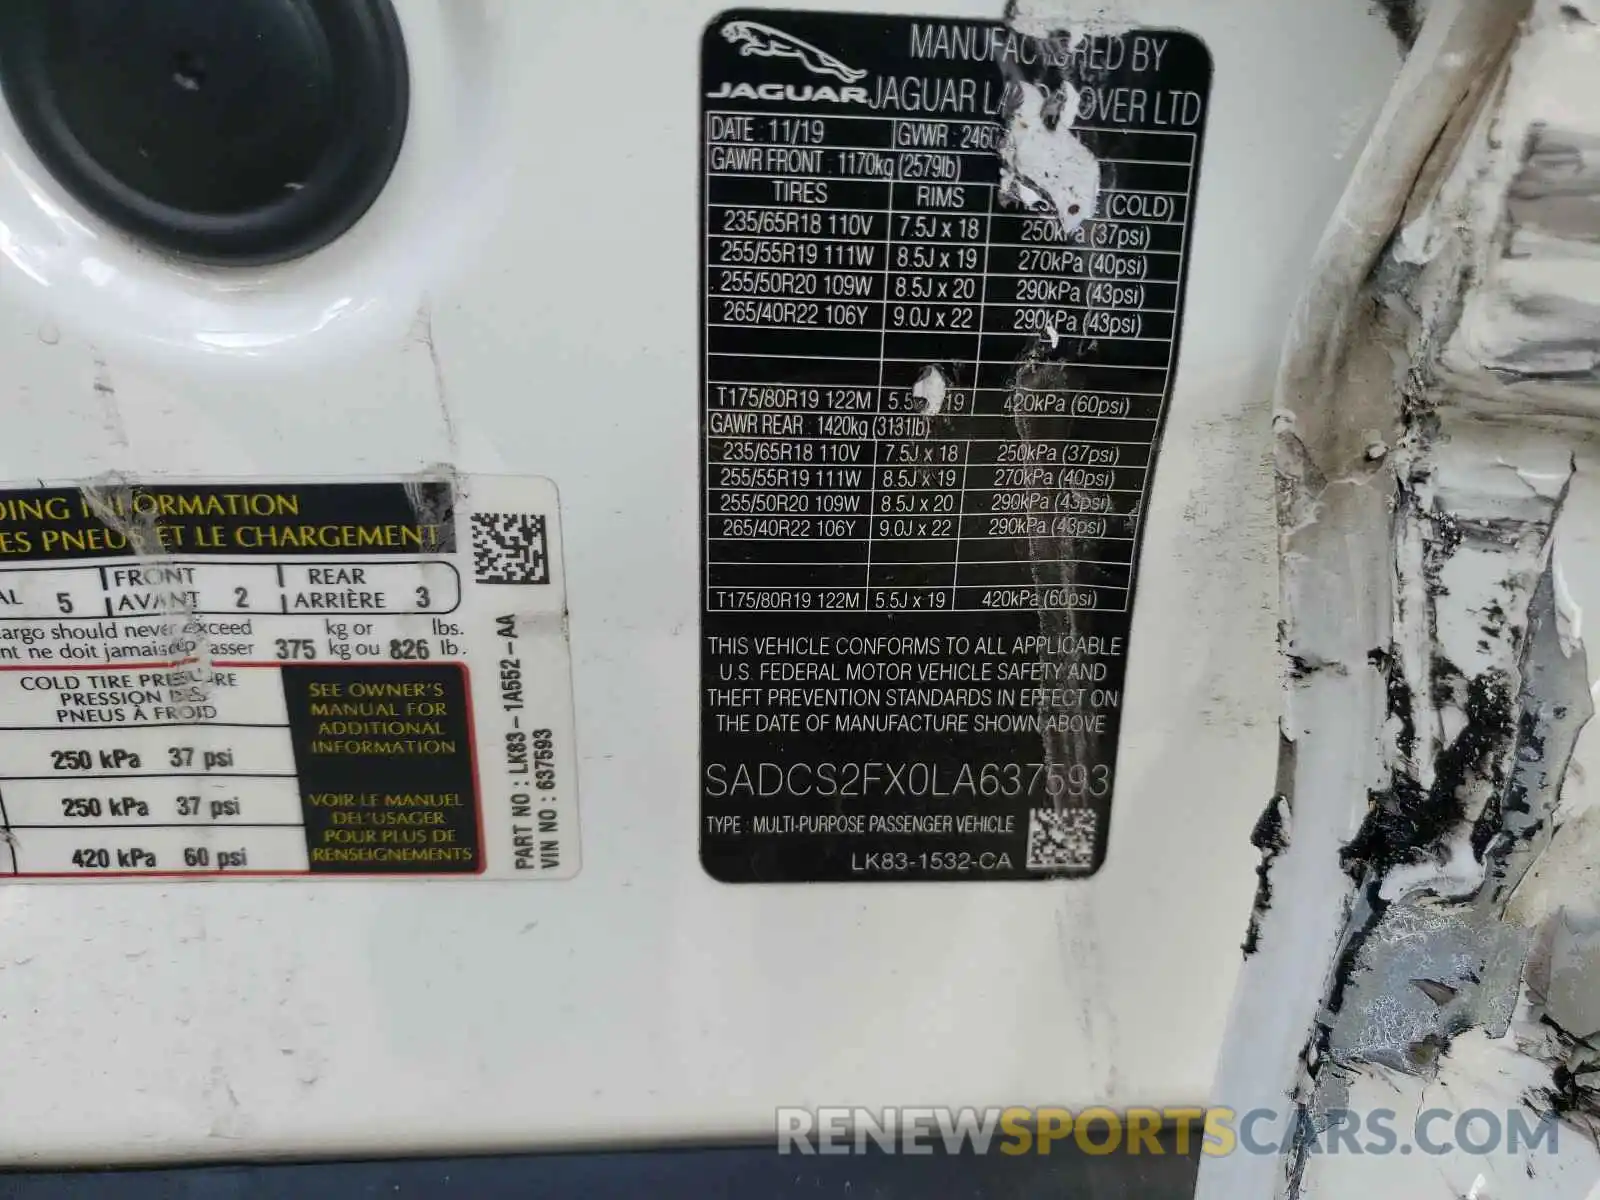 10 Photograph of a damaged car SADCS2FX0LA637593 JAGUAR F-PACE 2020